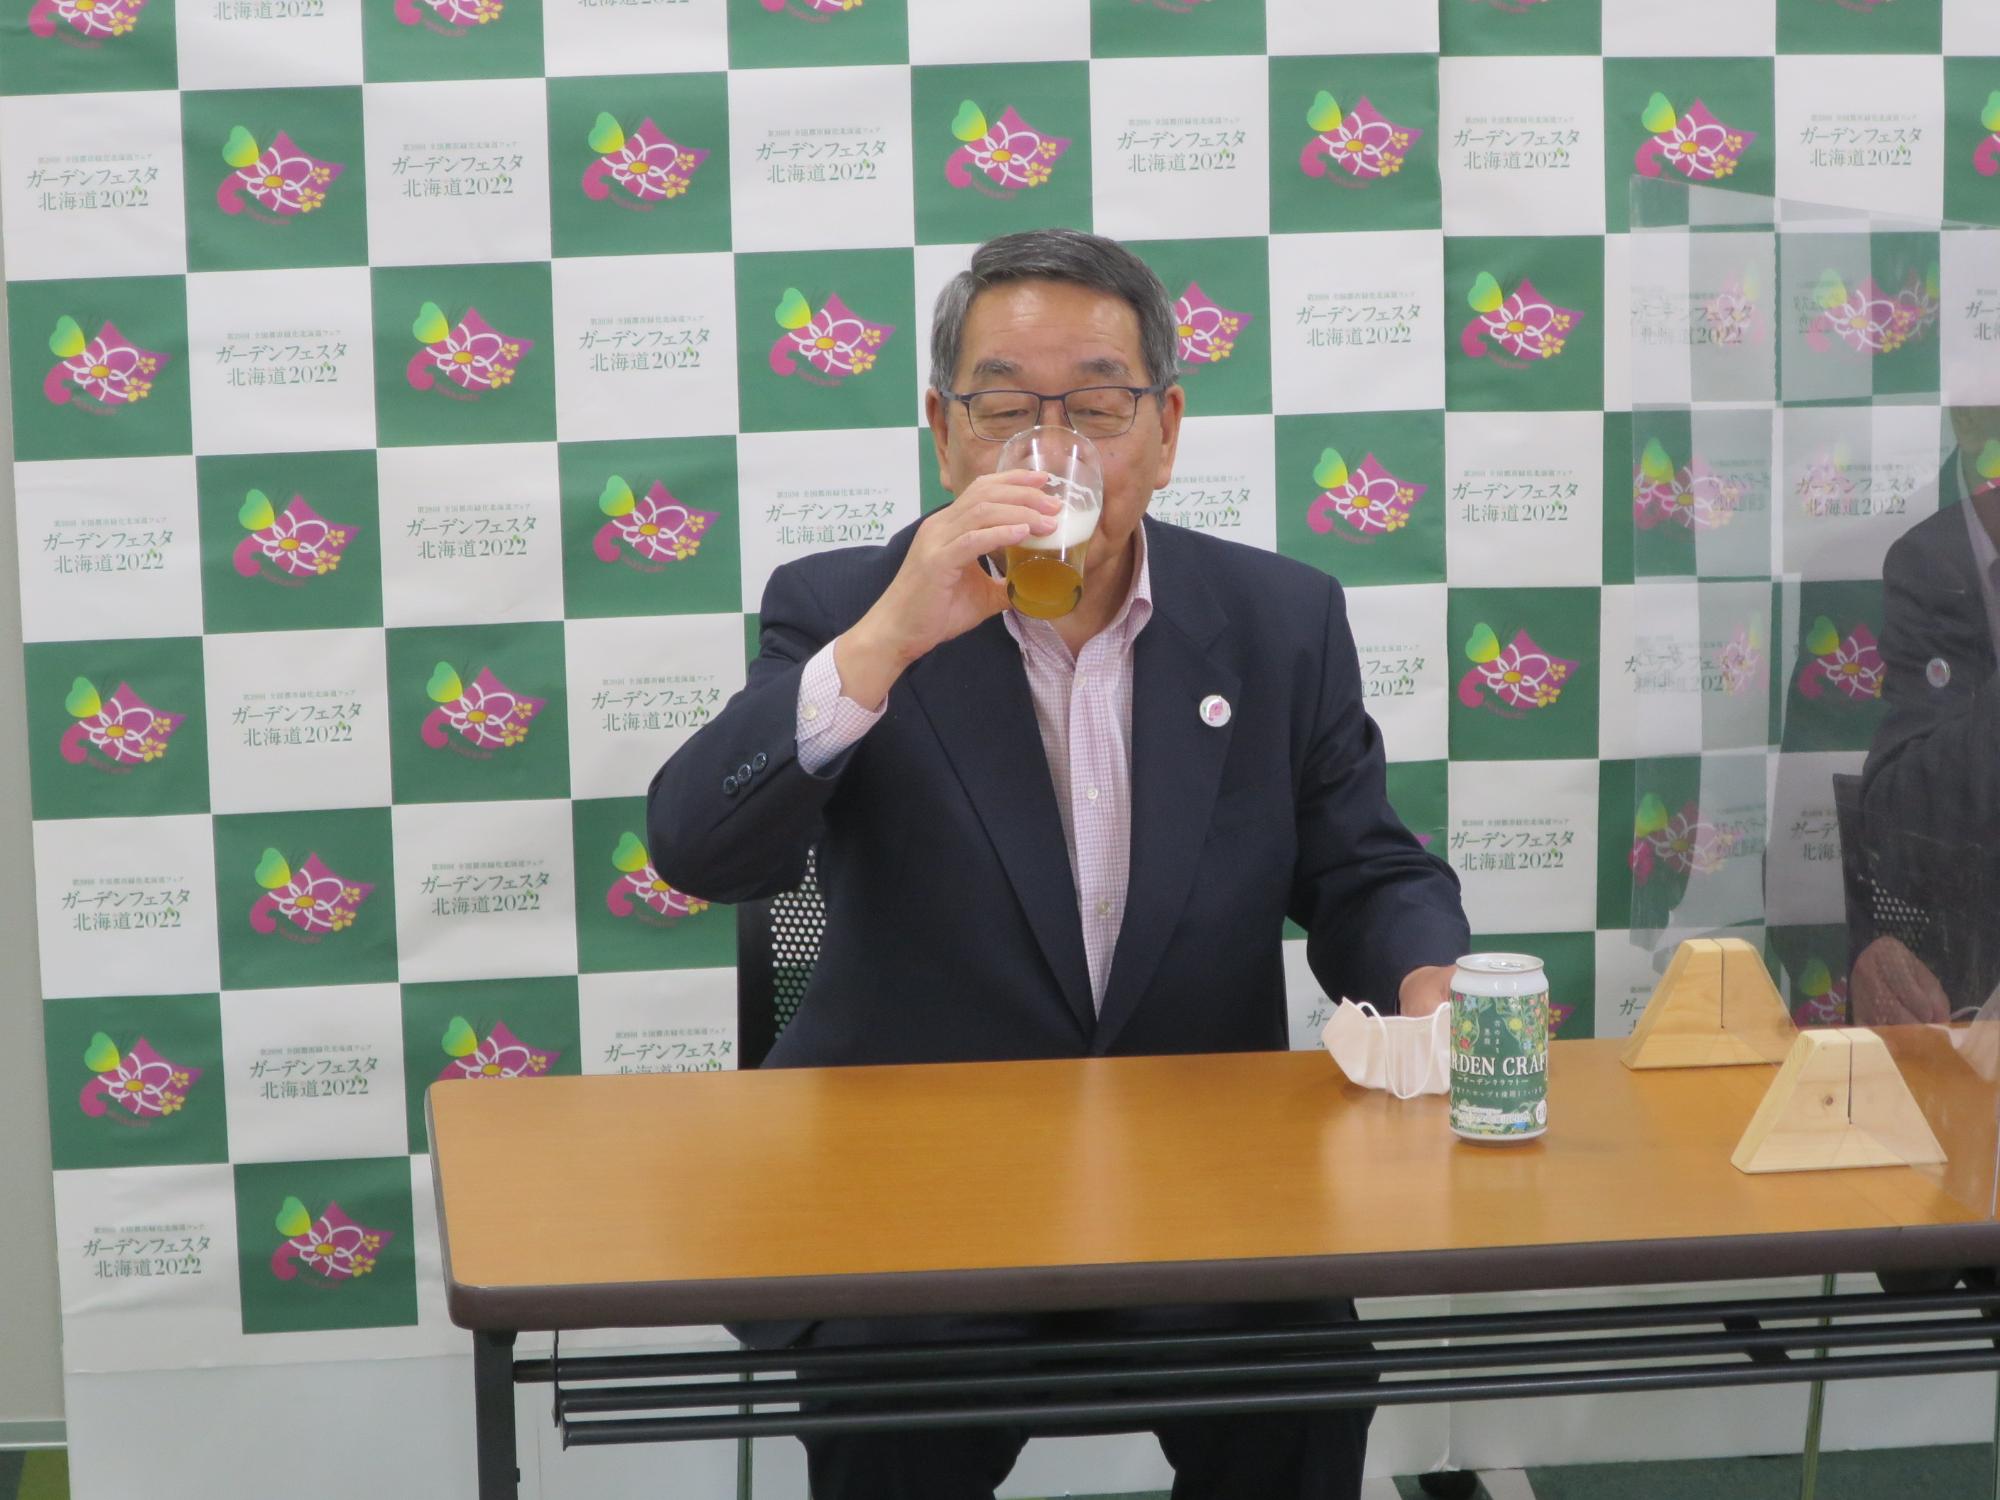 クラフトビールを試飲する原田市長